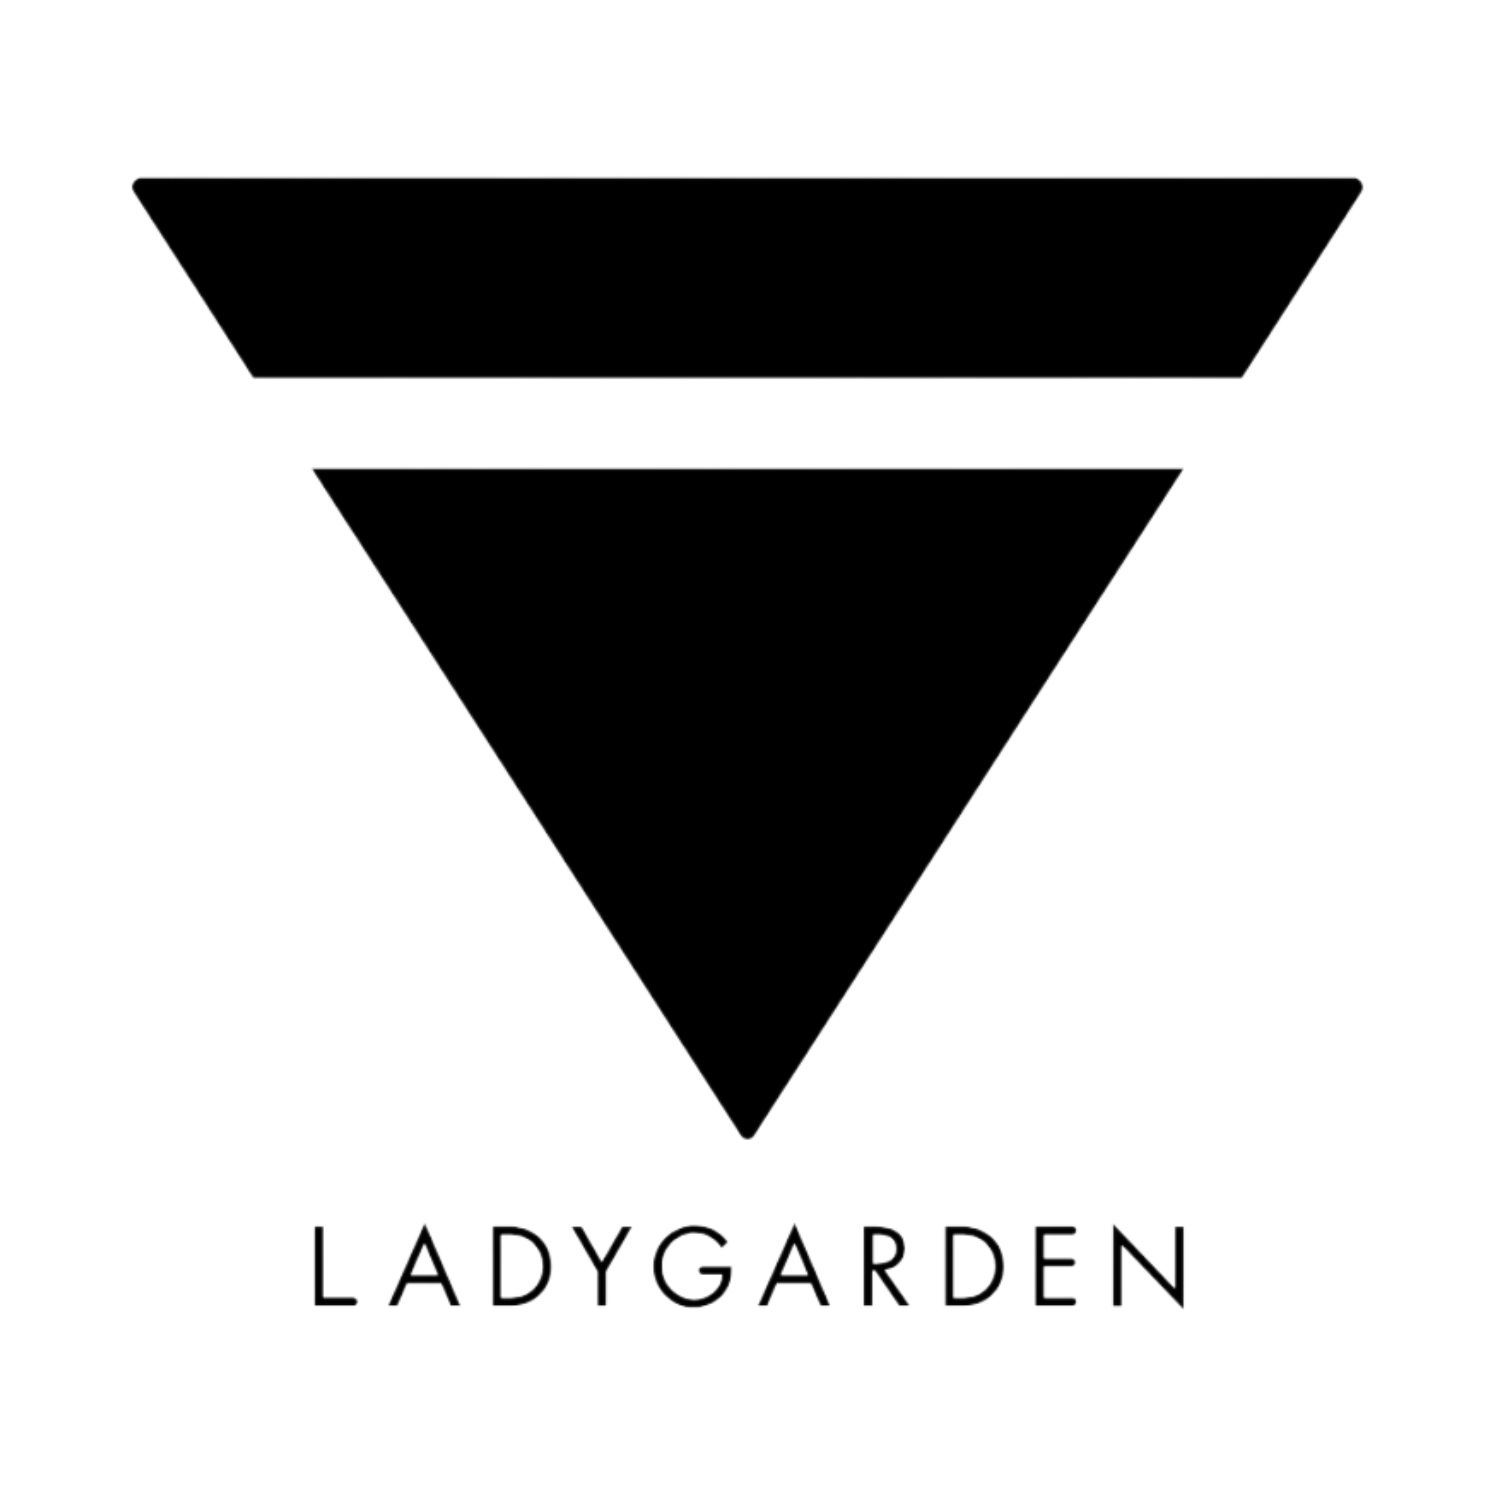 Ladygarden Wines